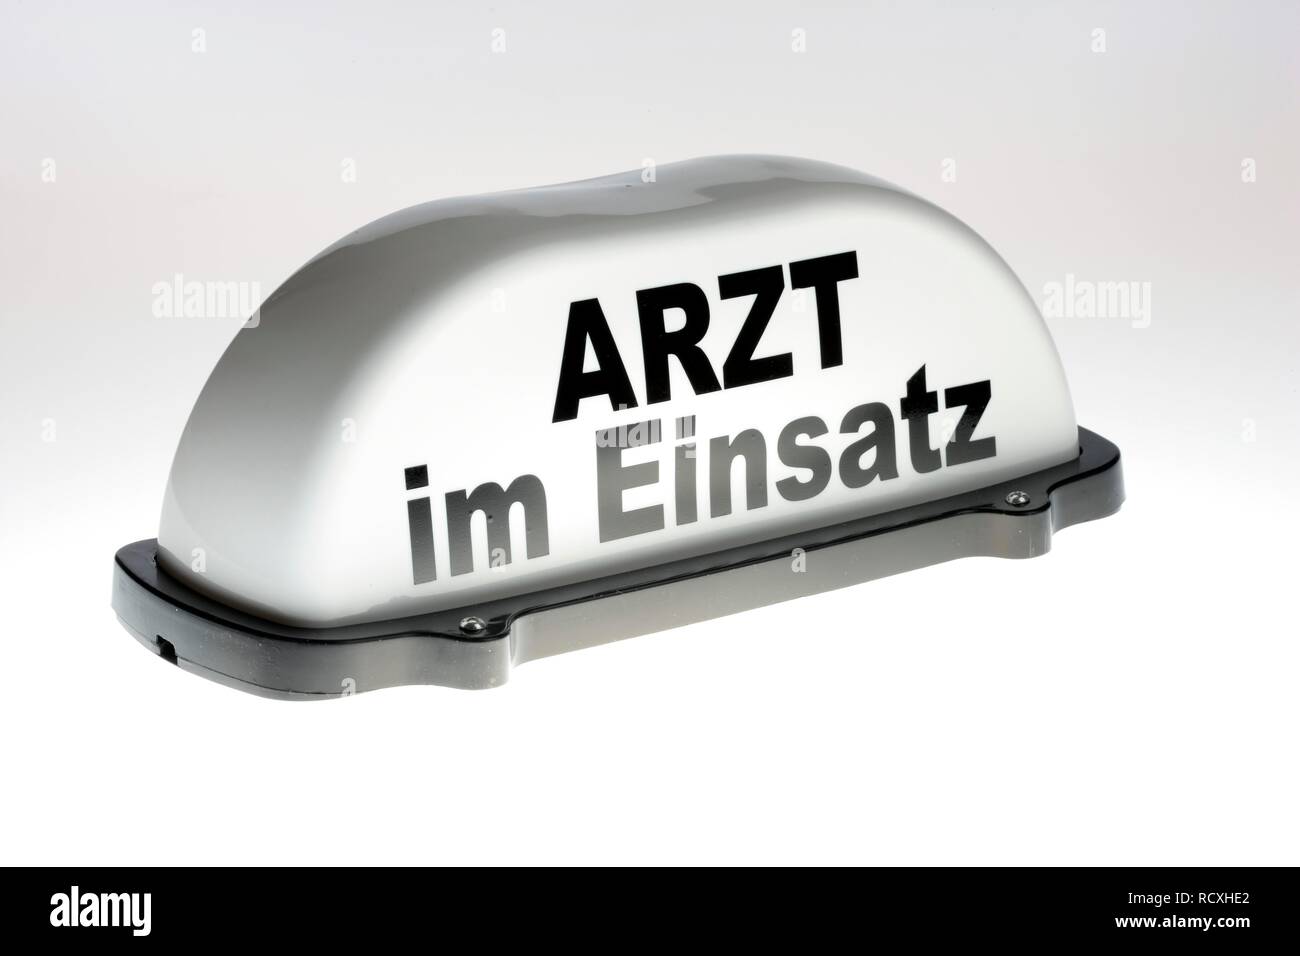 Arzt im Einsatz, tedesco per il medico a dovere, segno del segnale che deve essere aggiunto al tetto di un'automobile Foto Stock